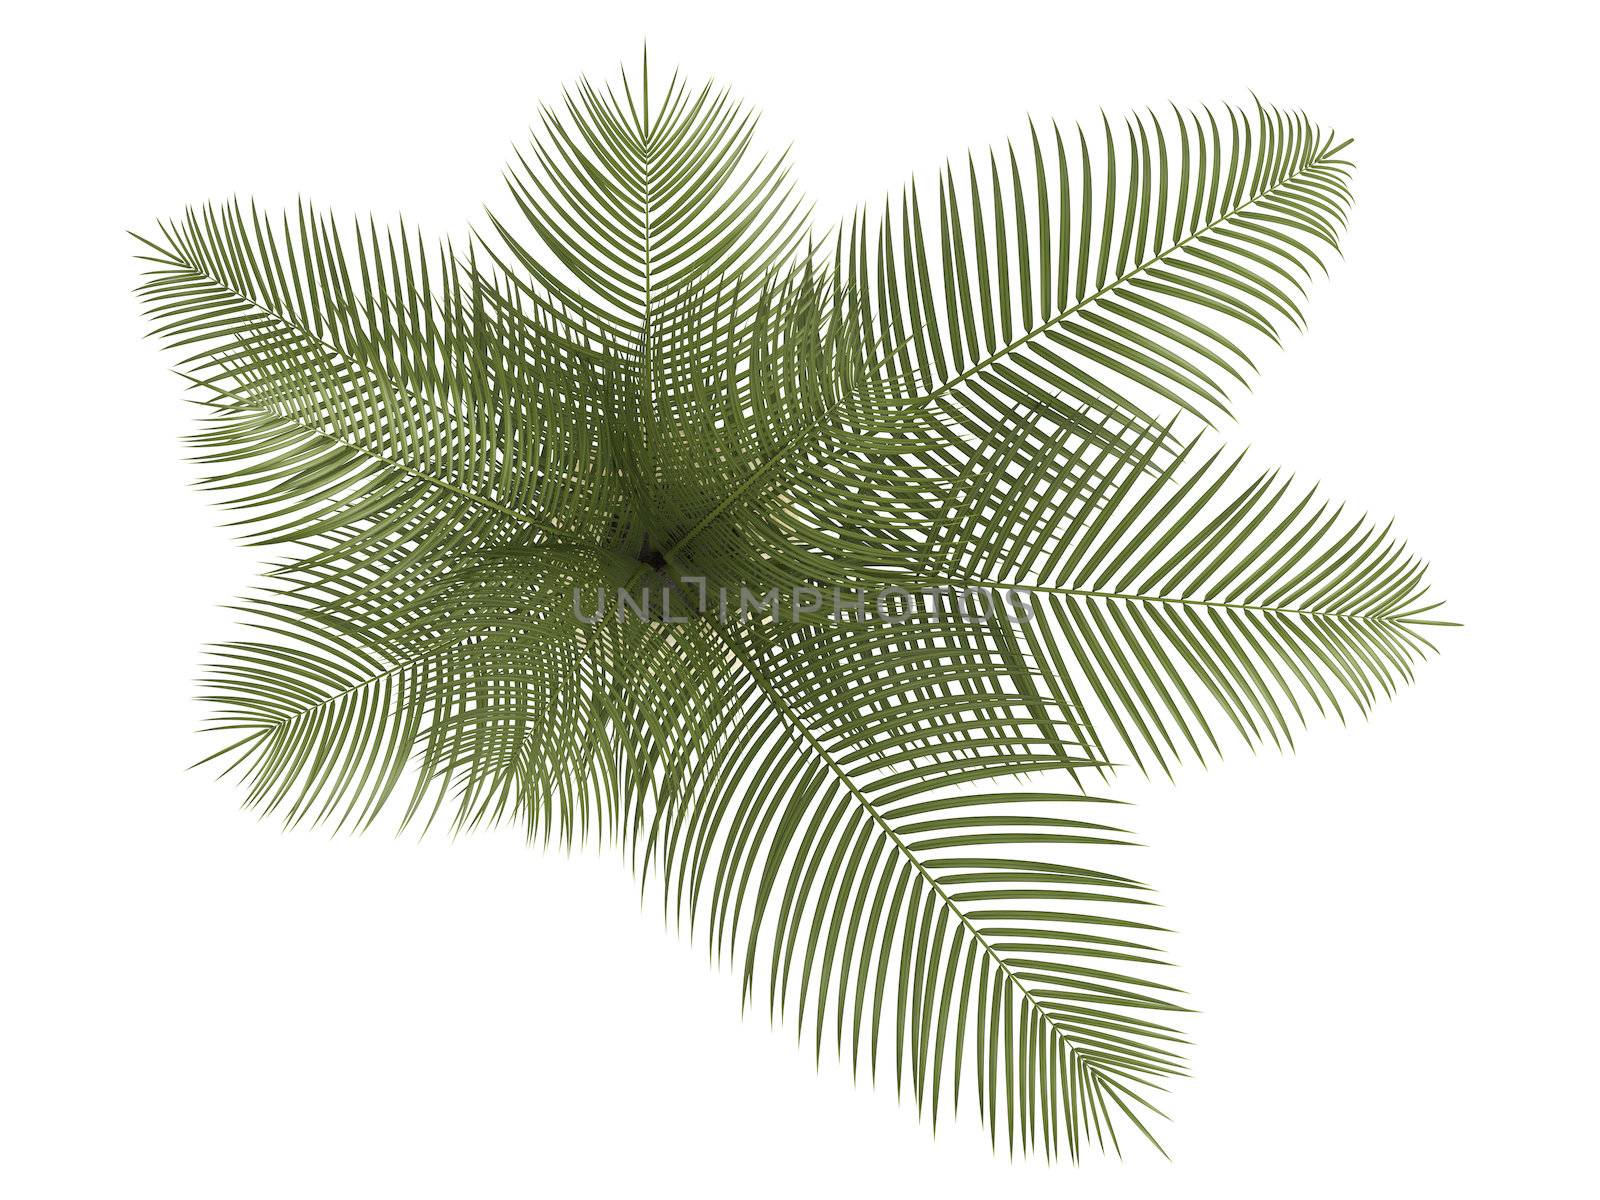 Areca palm houseplant by AlexanderMorozov